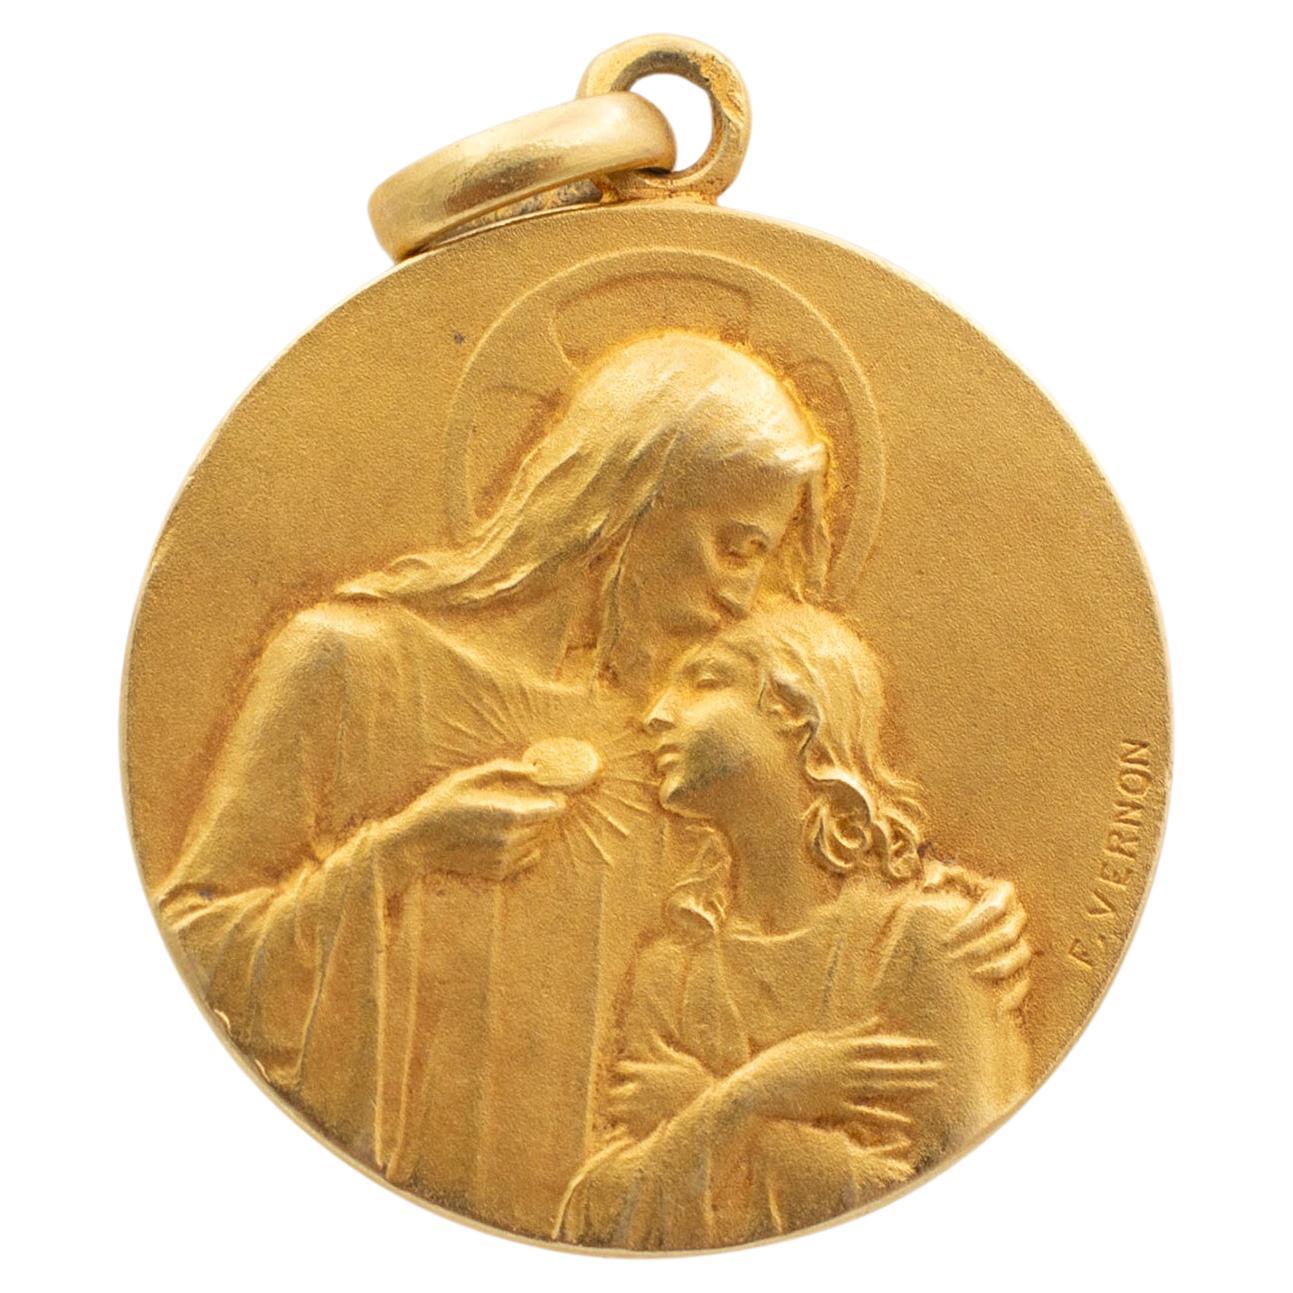 Antique Edwardian Cartier Frederic de Vernon 18K Yellow Gold Medal Pendant